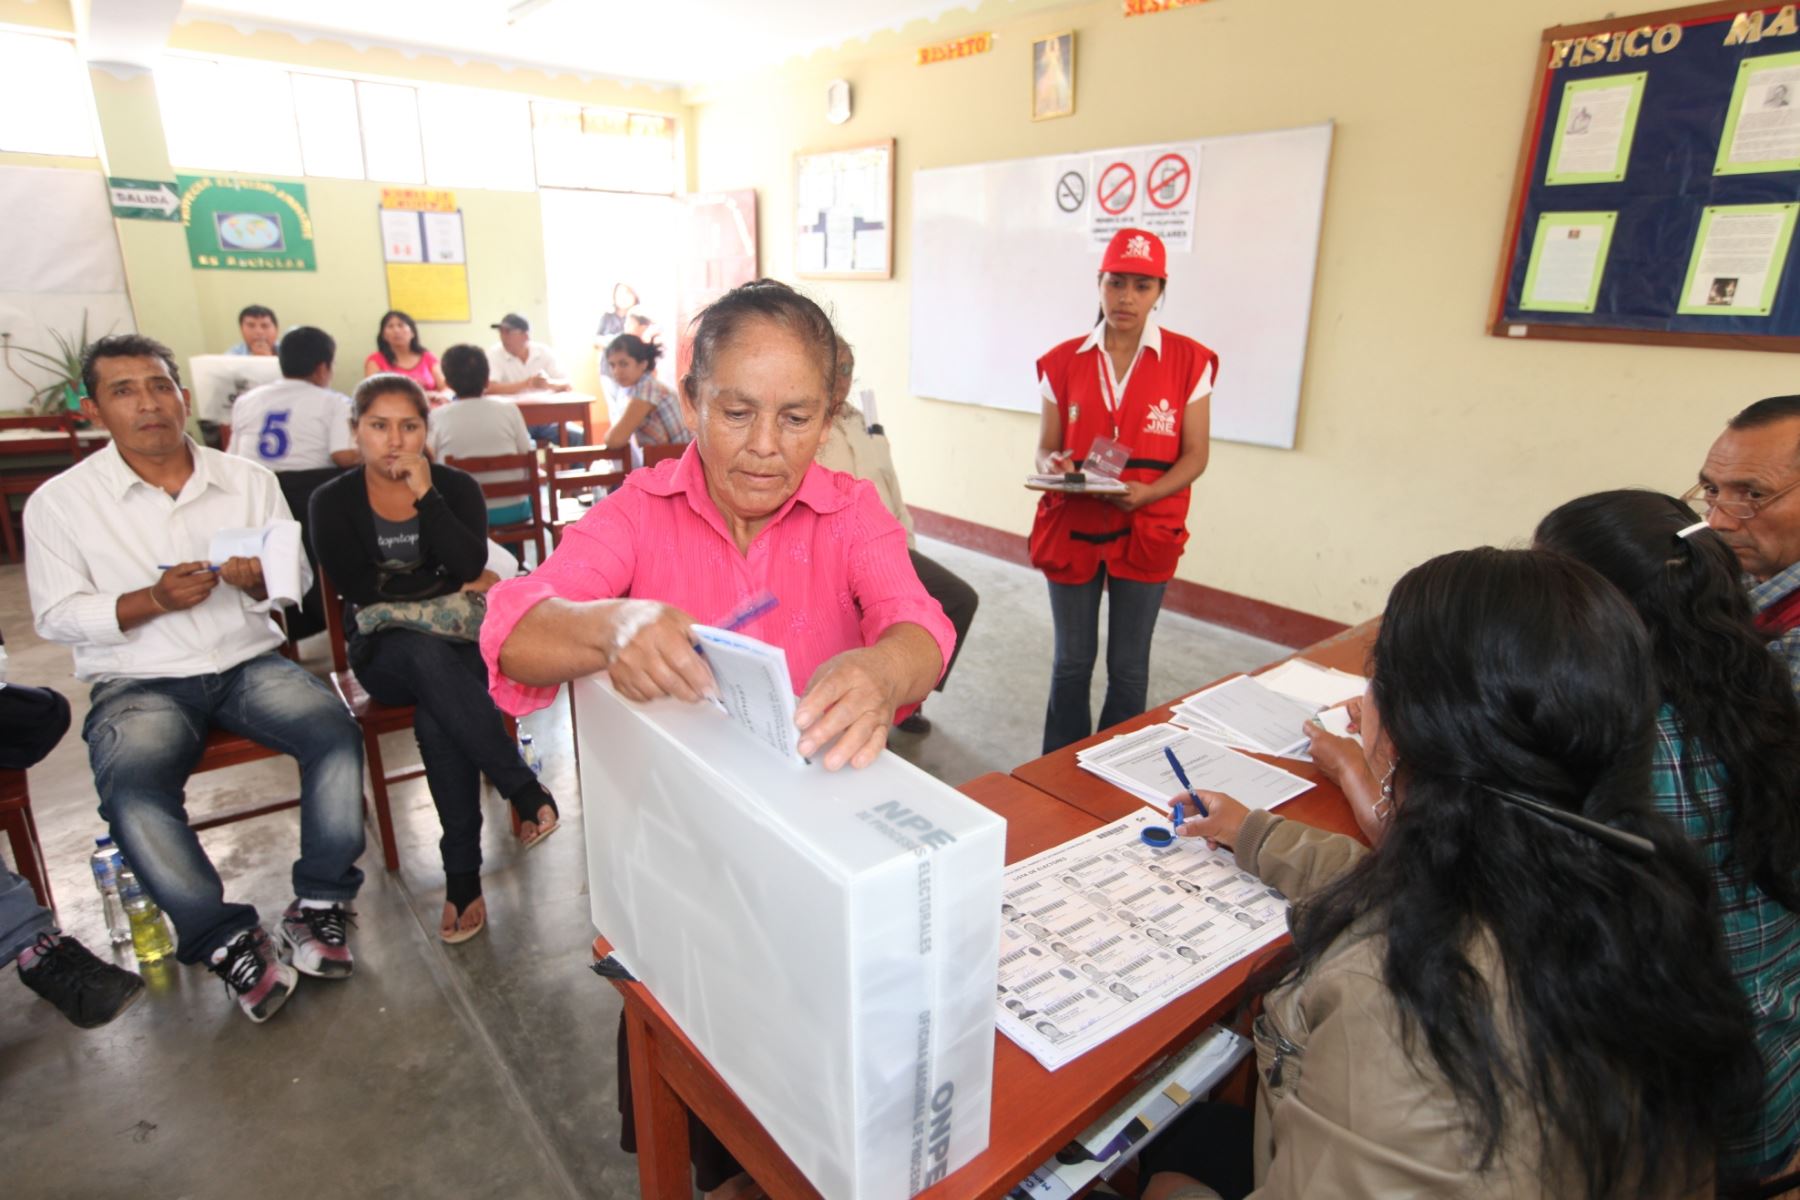 JNE solicita al Ejecutivo convocar a elecciones municipales complementarias